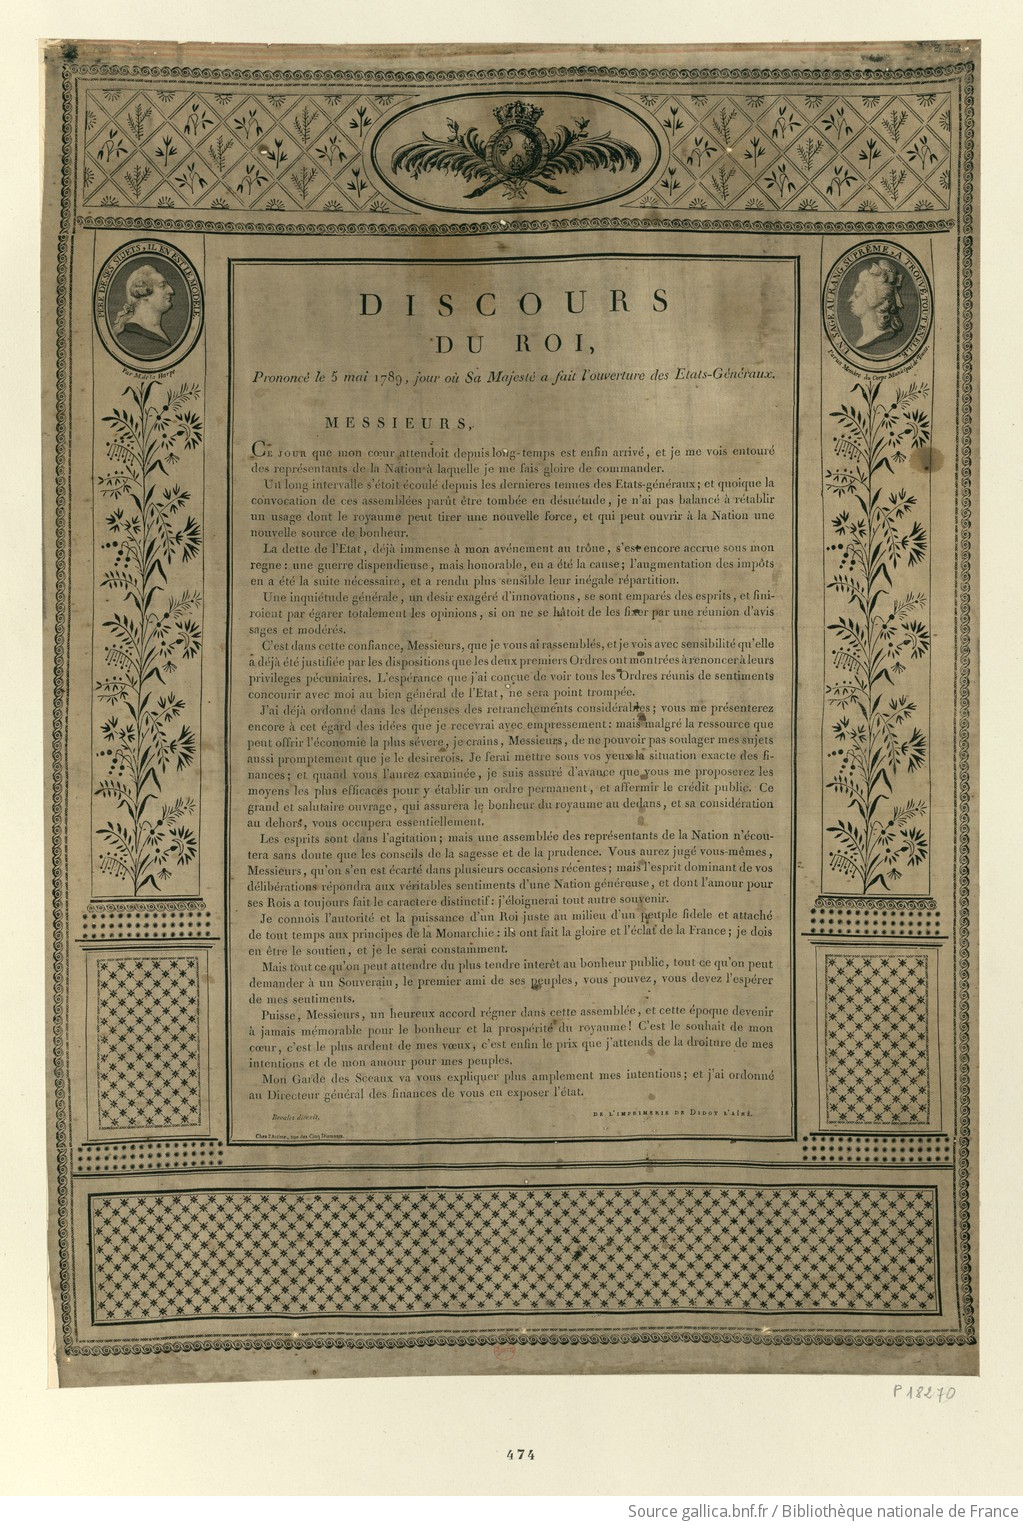 Discours du roi, Prononcé le 5 mai 1789, jour où Sa Majesté a fait l'ouverture des Etats-Généraux : [estampe] / Bevalet direxit